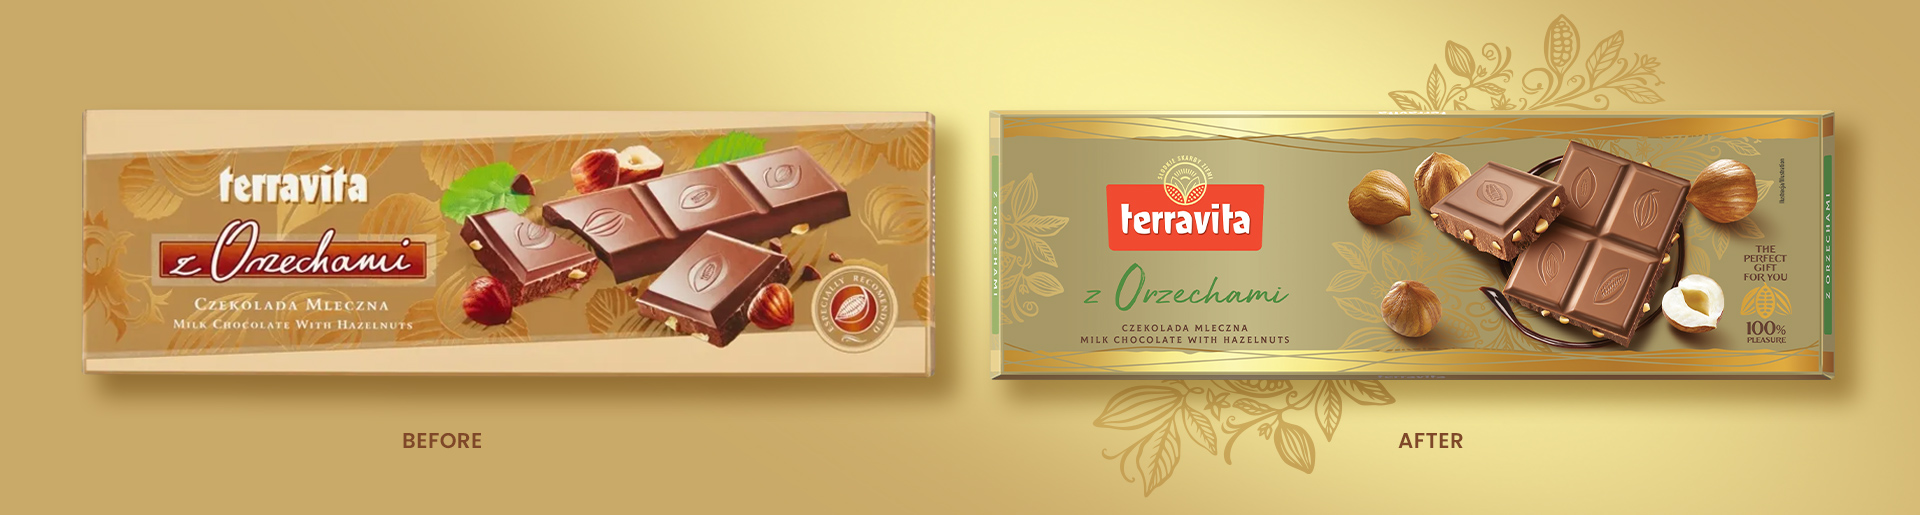 Terravita przed i po - stare i nowe opakowanie czekolady dużej.